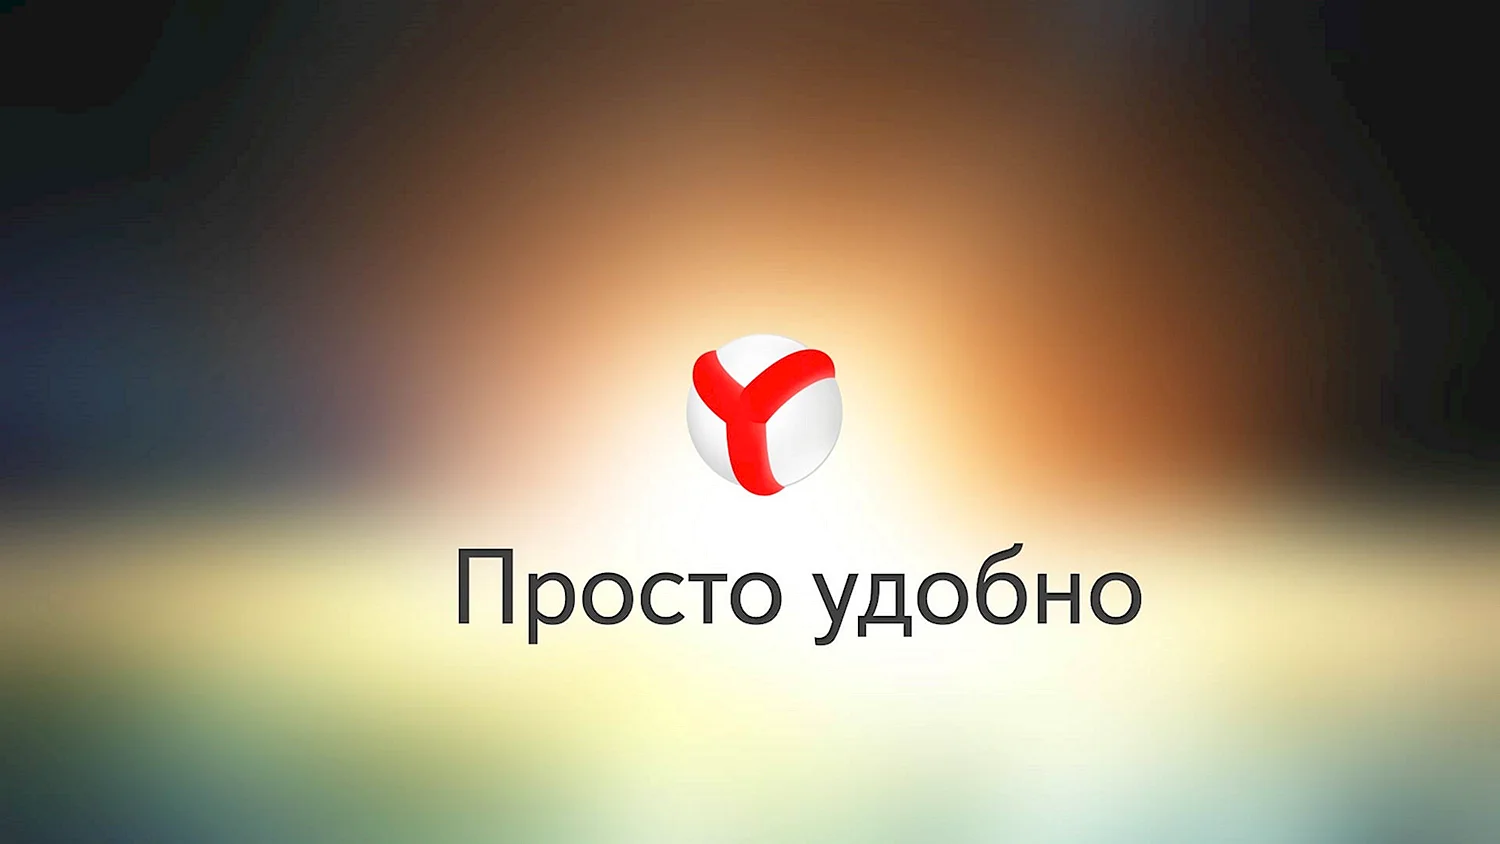 Яндекс.браузер